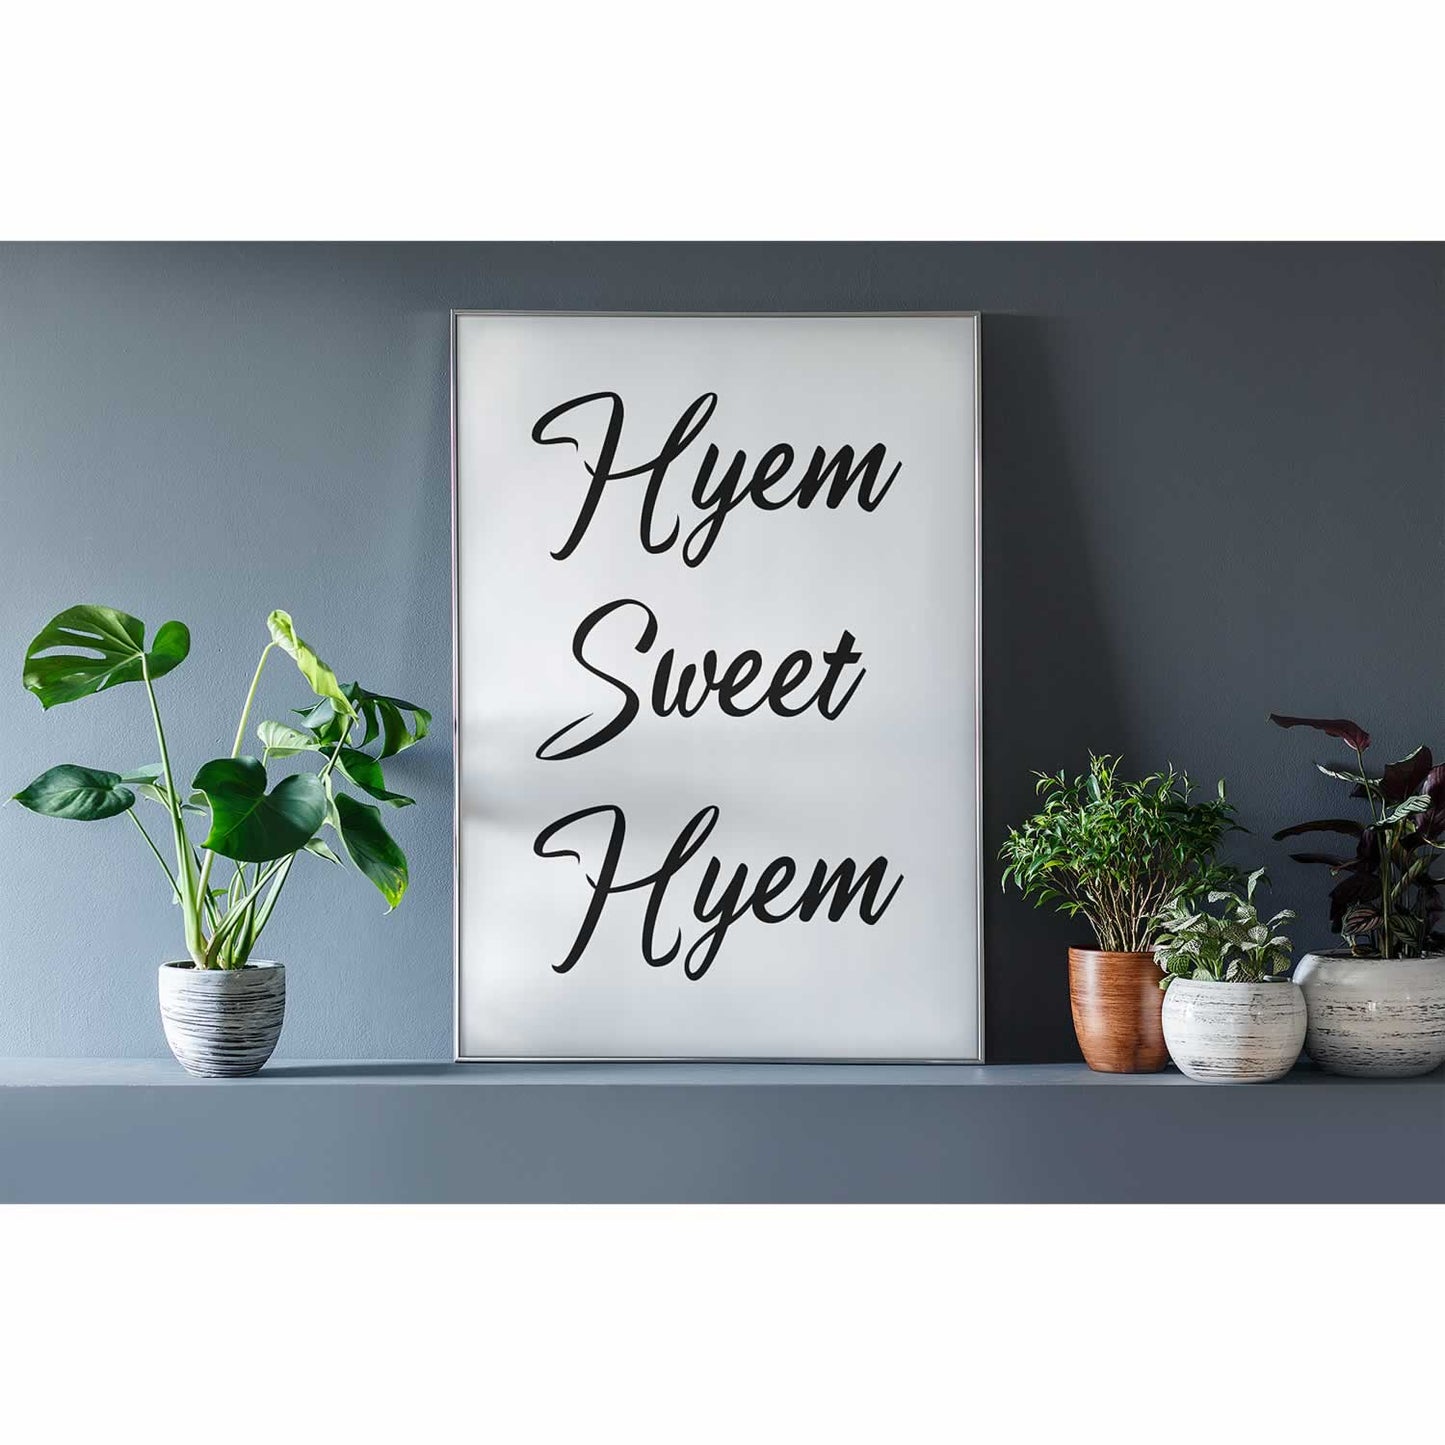 Hyem Sweet Hyem Print